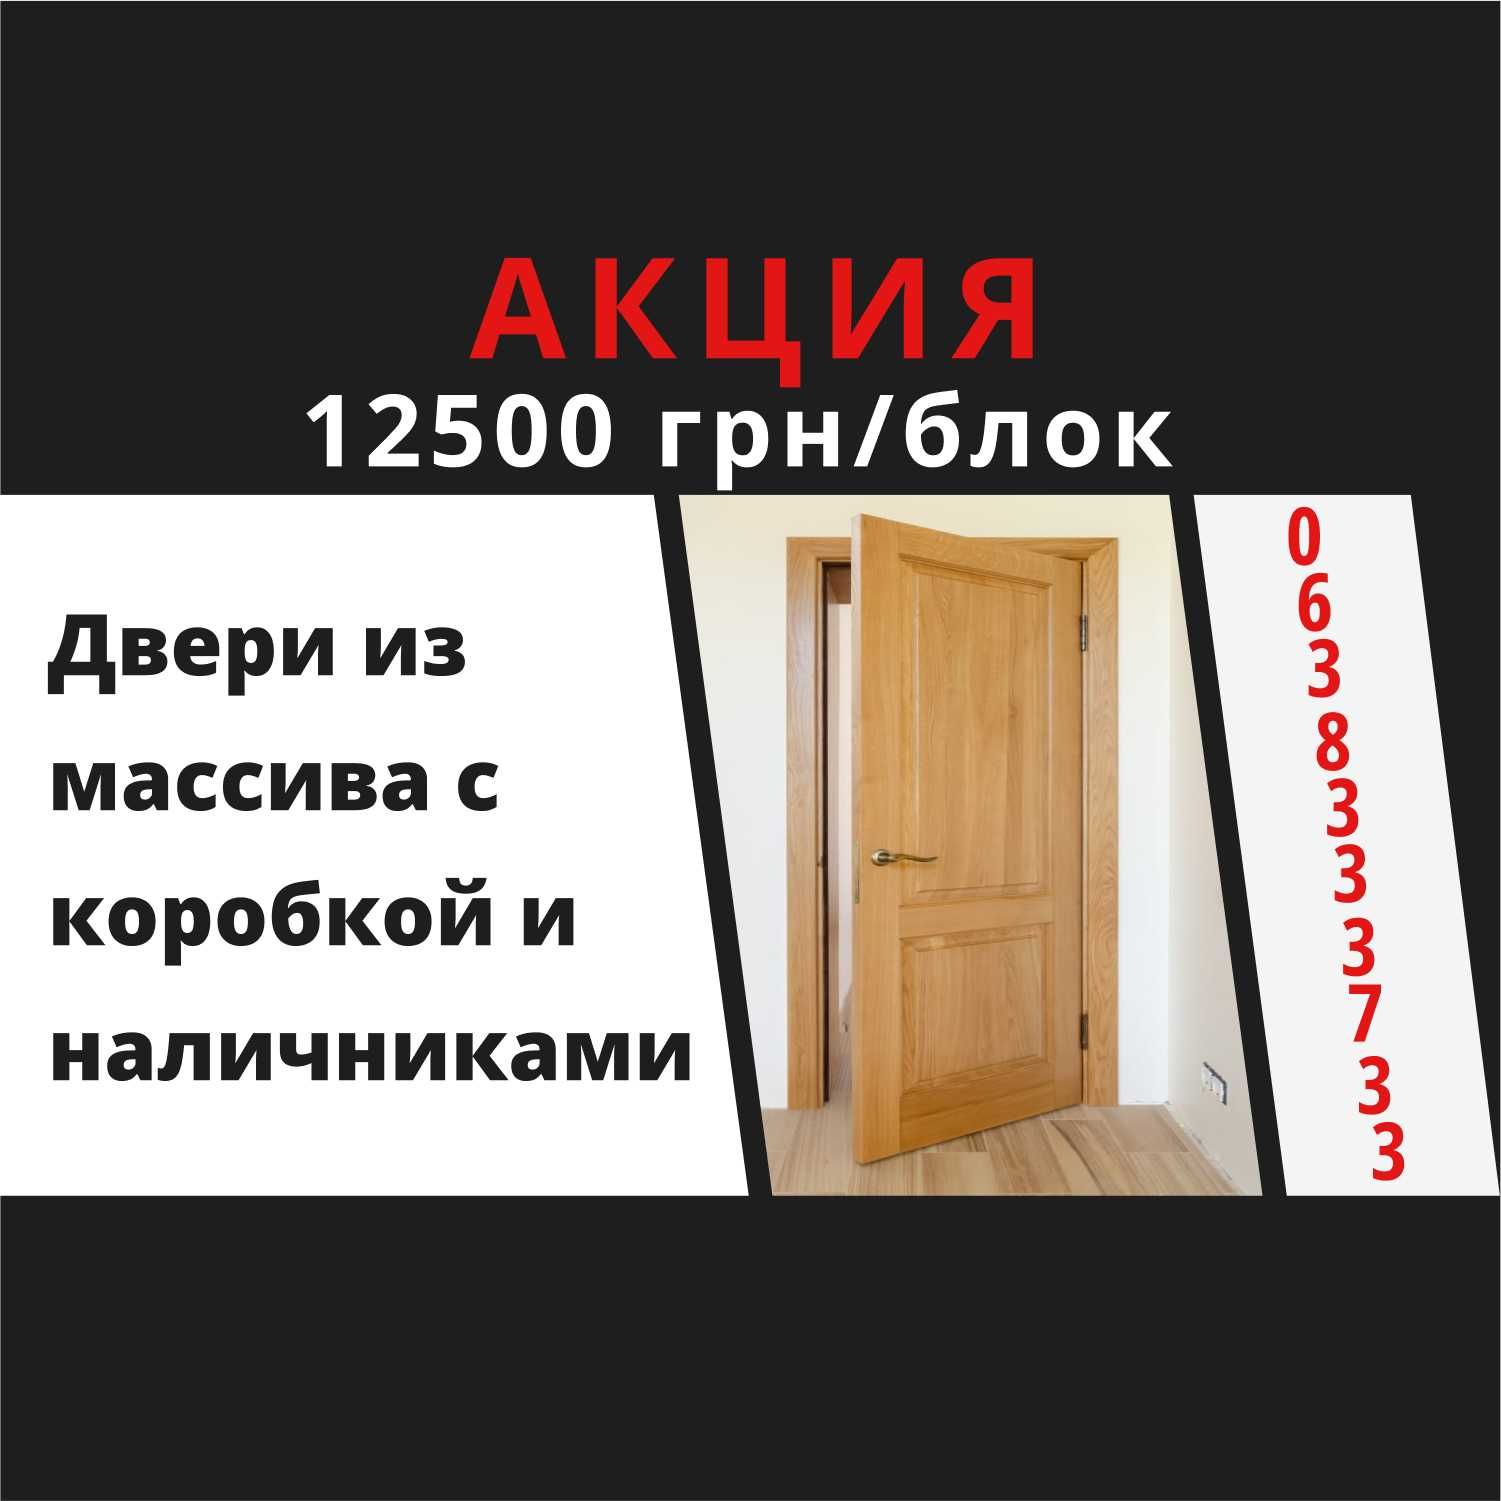 Акция 12500 грн/блок изготовление дверей, двери на заказ из массива